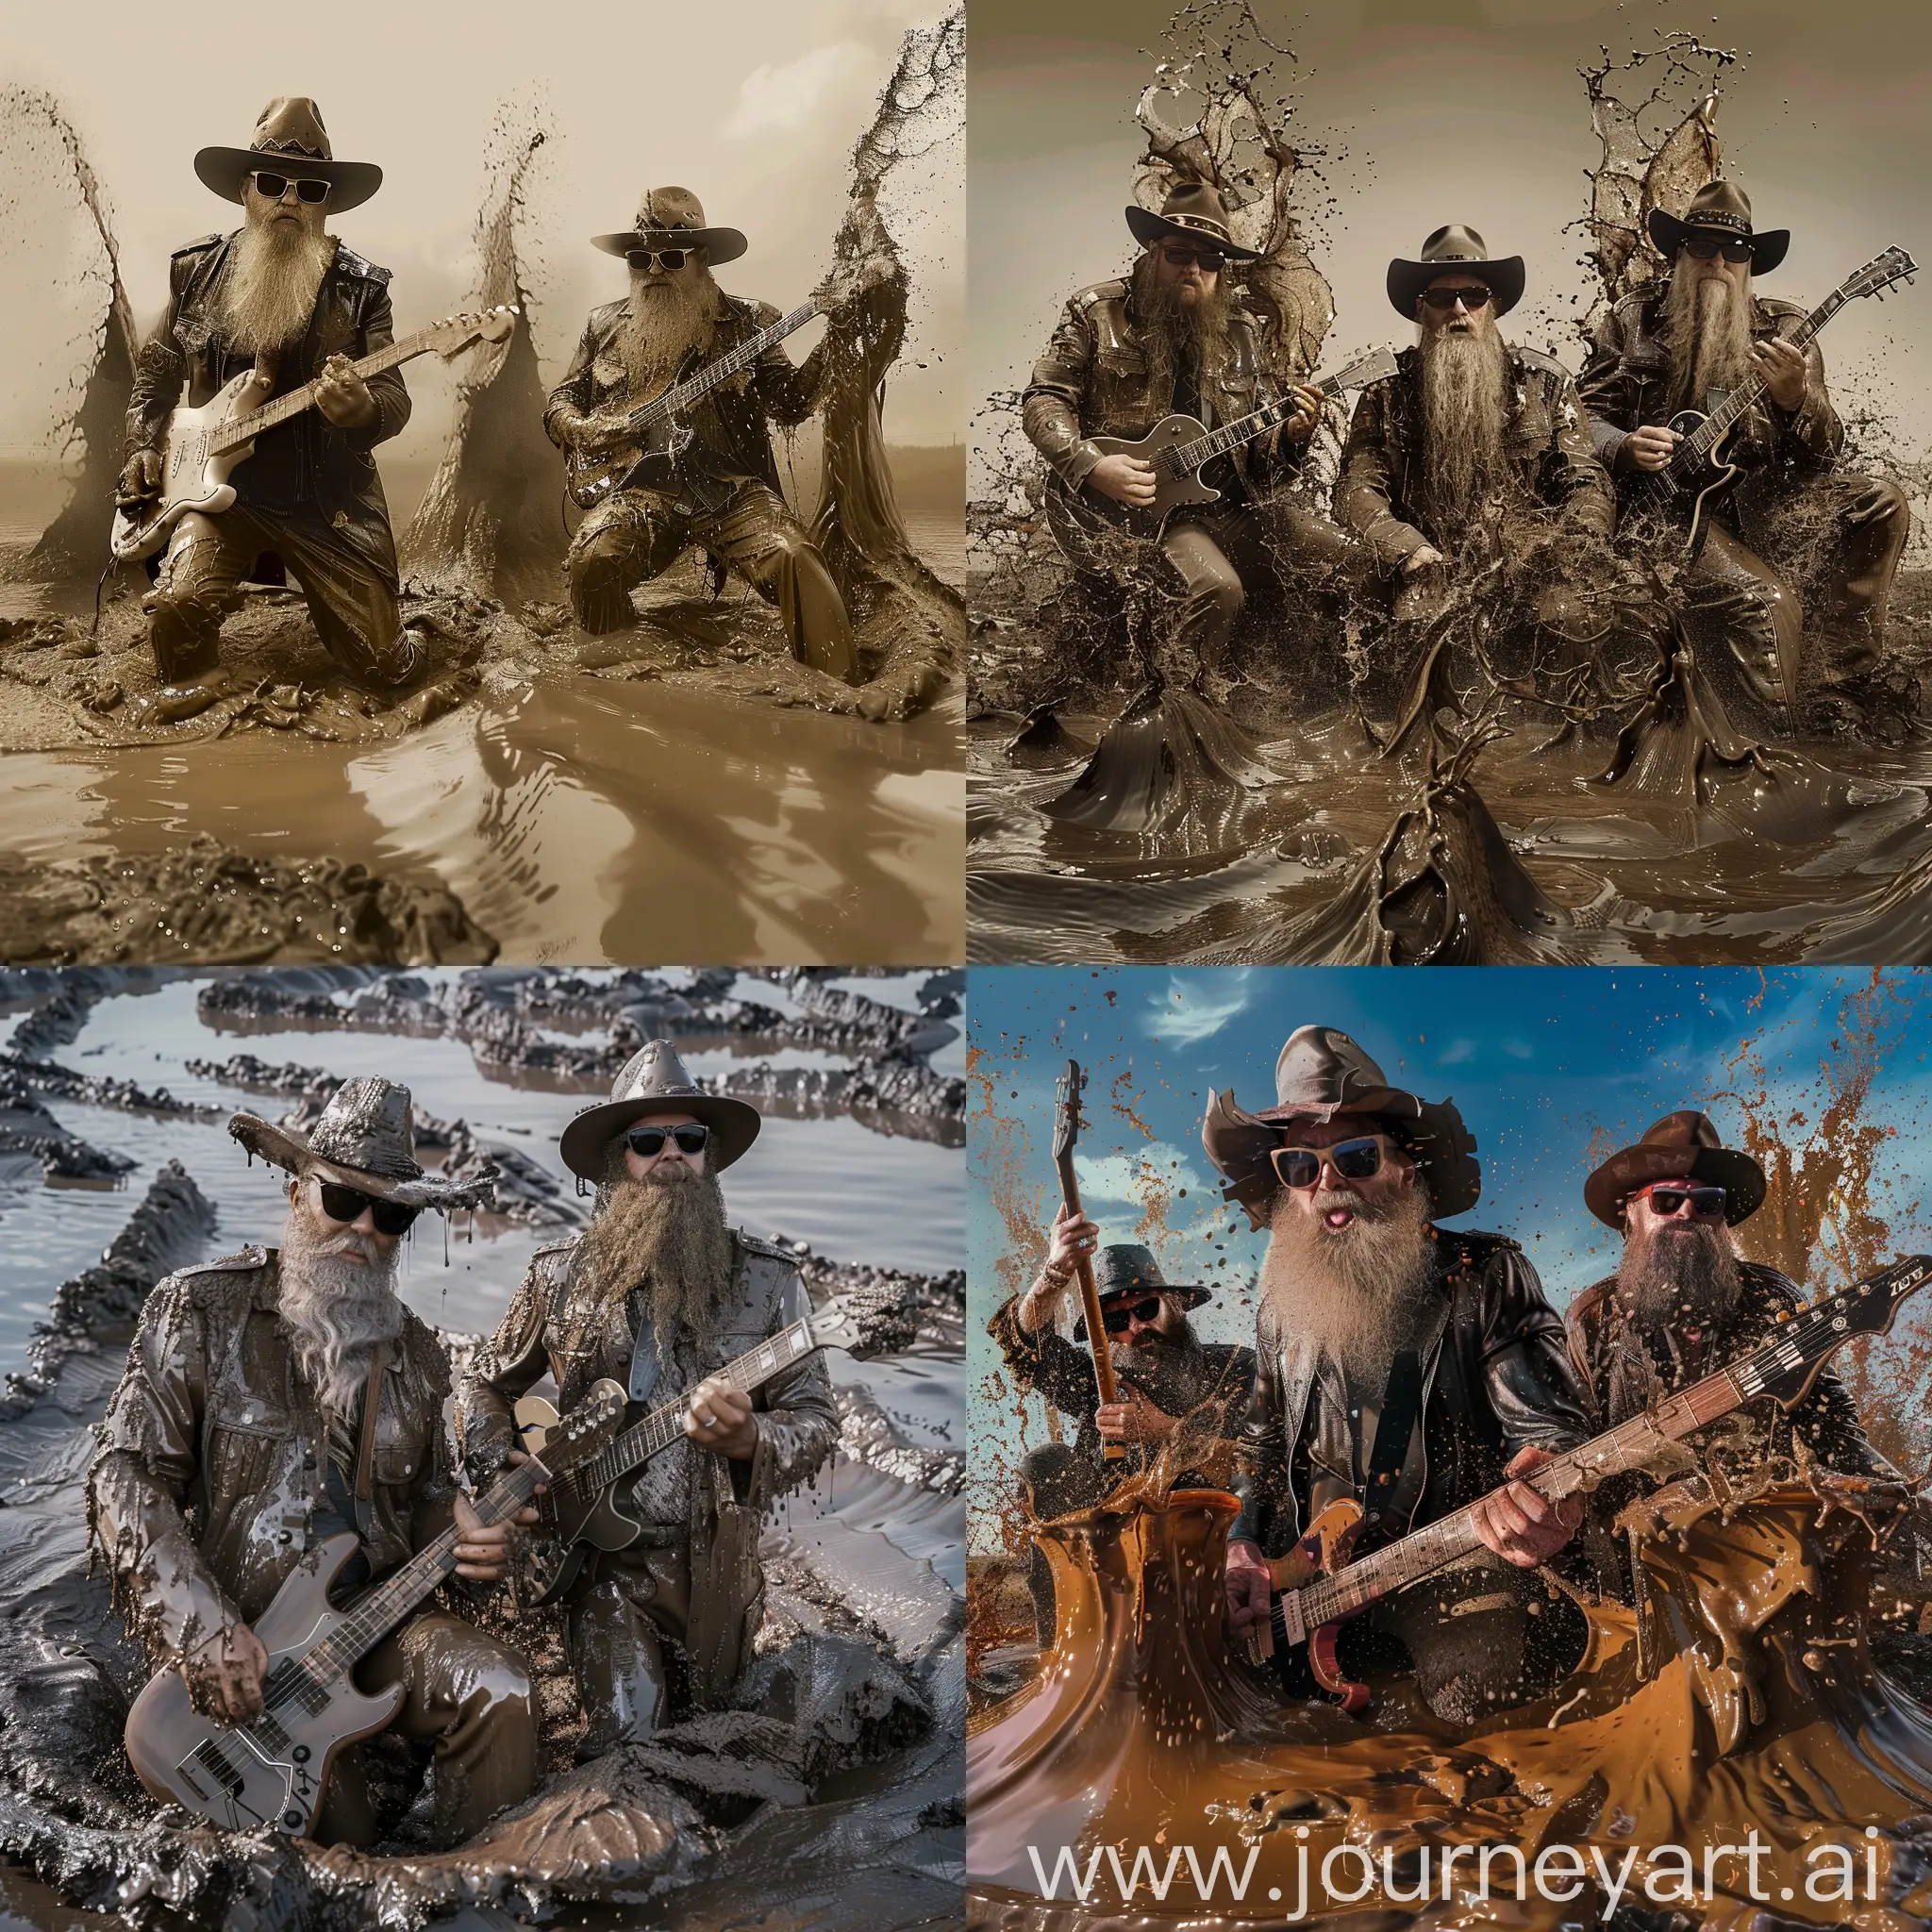 Fotorealistic image. ZZtop musicians  in an album cover Rio Grande mud